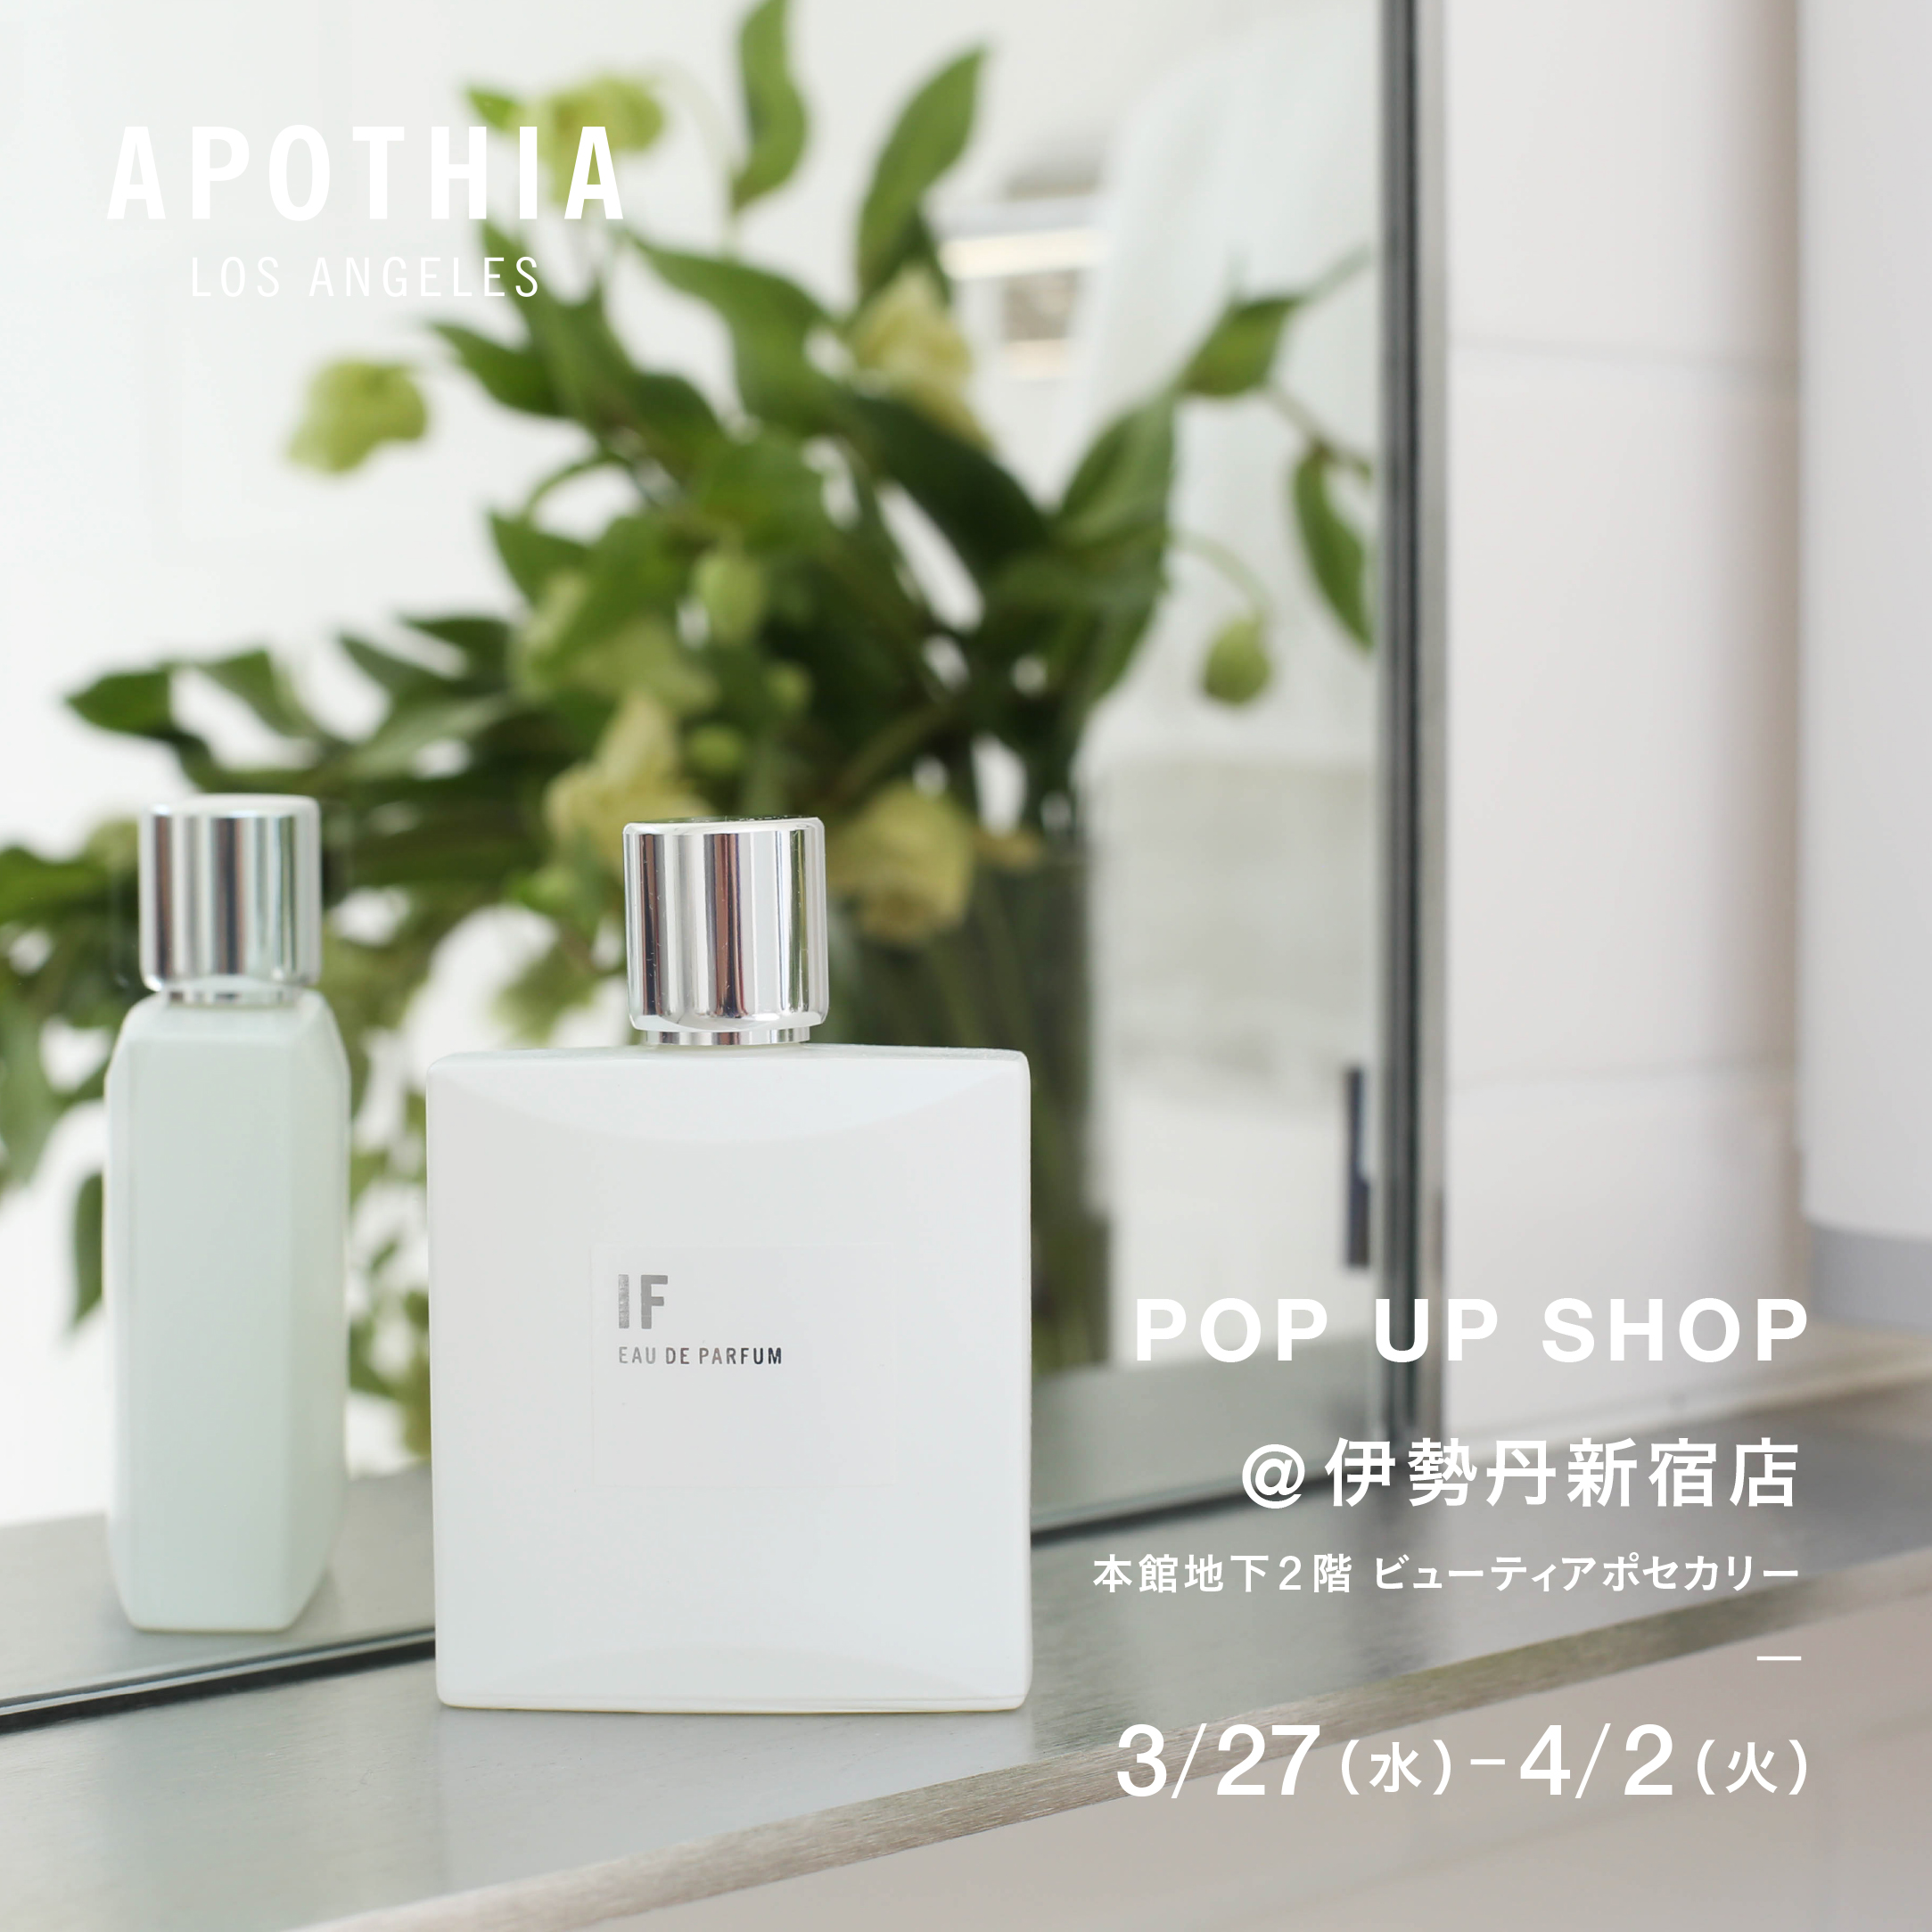 POP UP SHOP @ 伊勢丹 新宿店 | APOTHIA LOS ANGELES